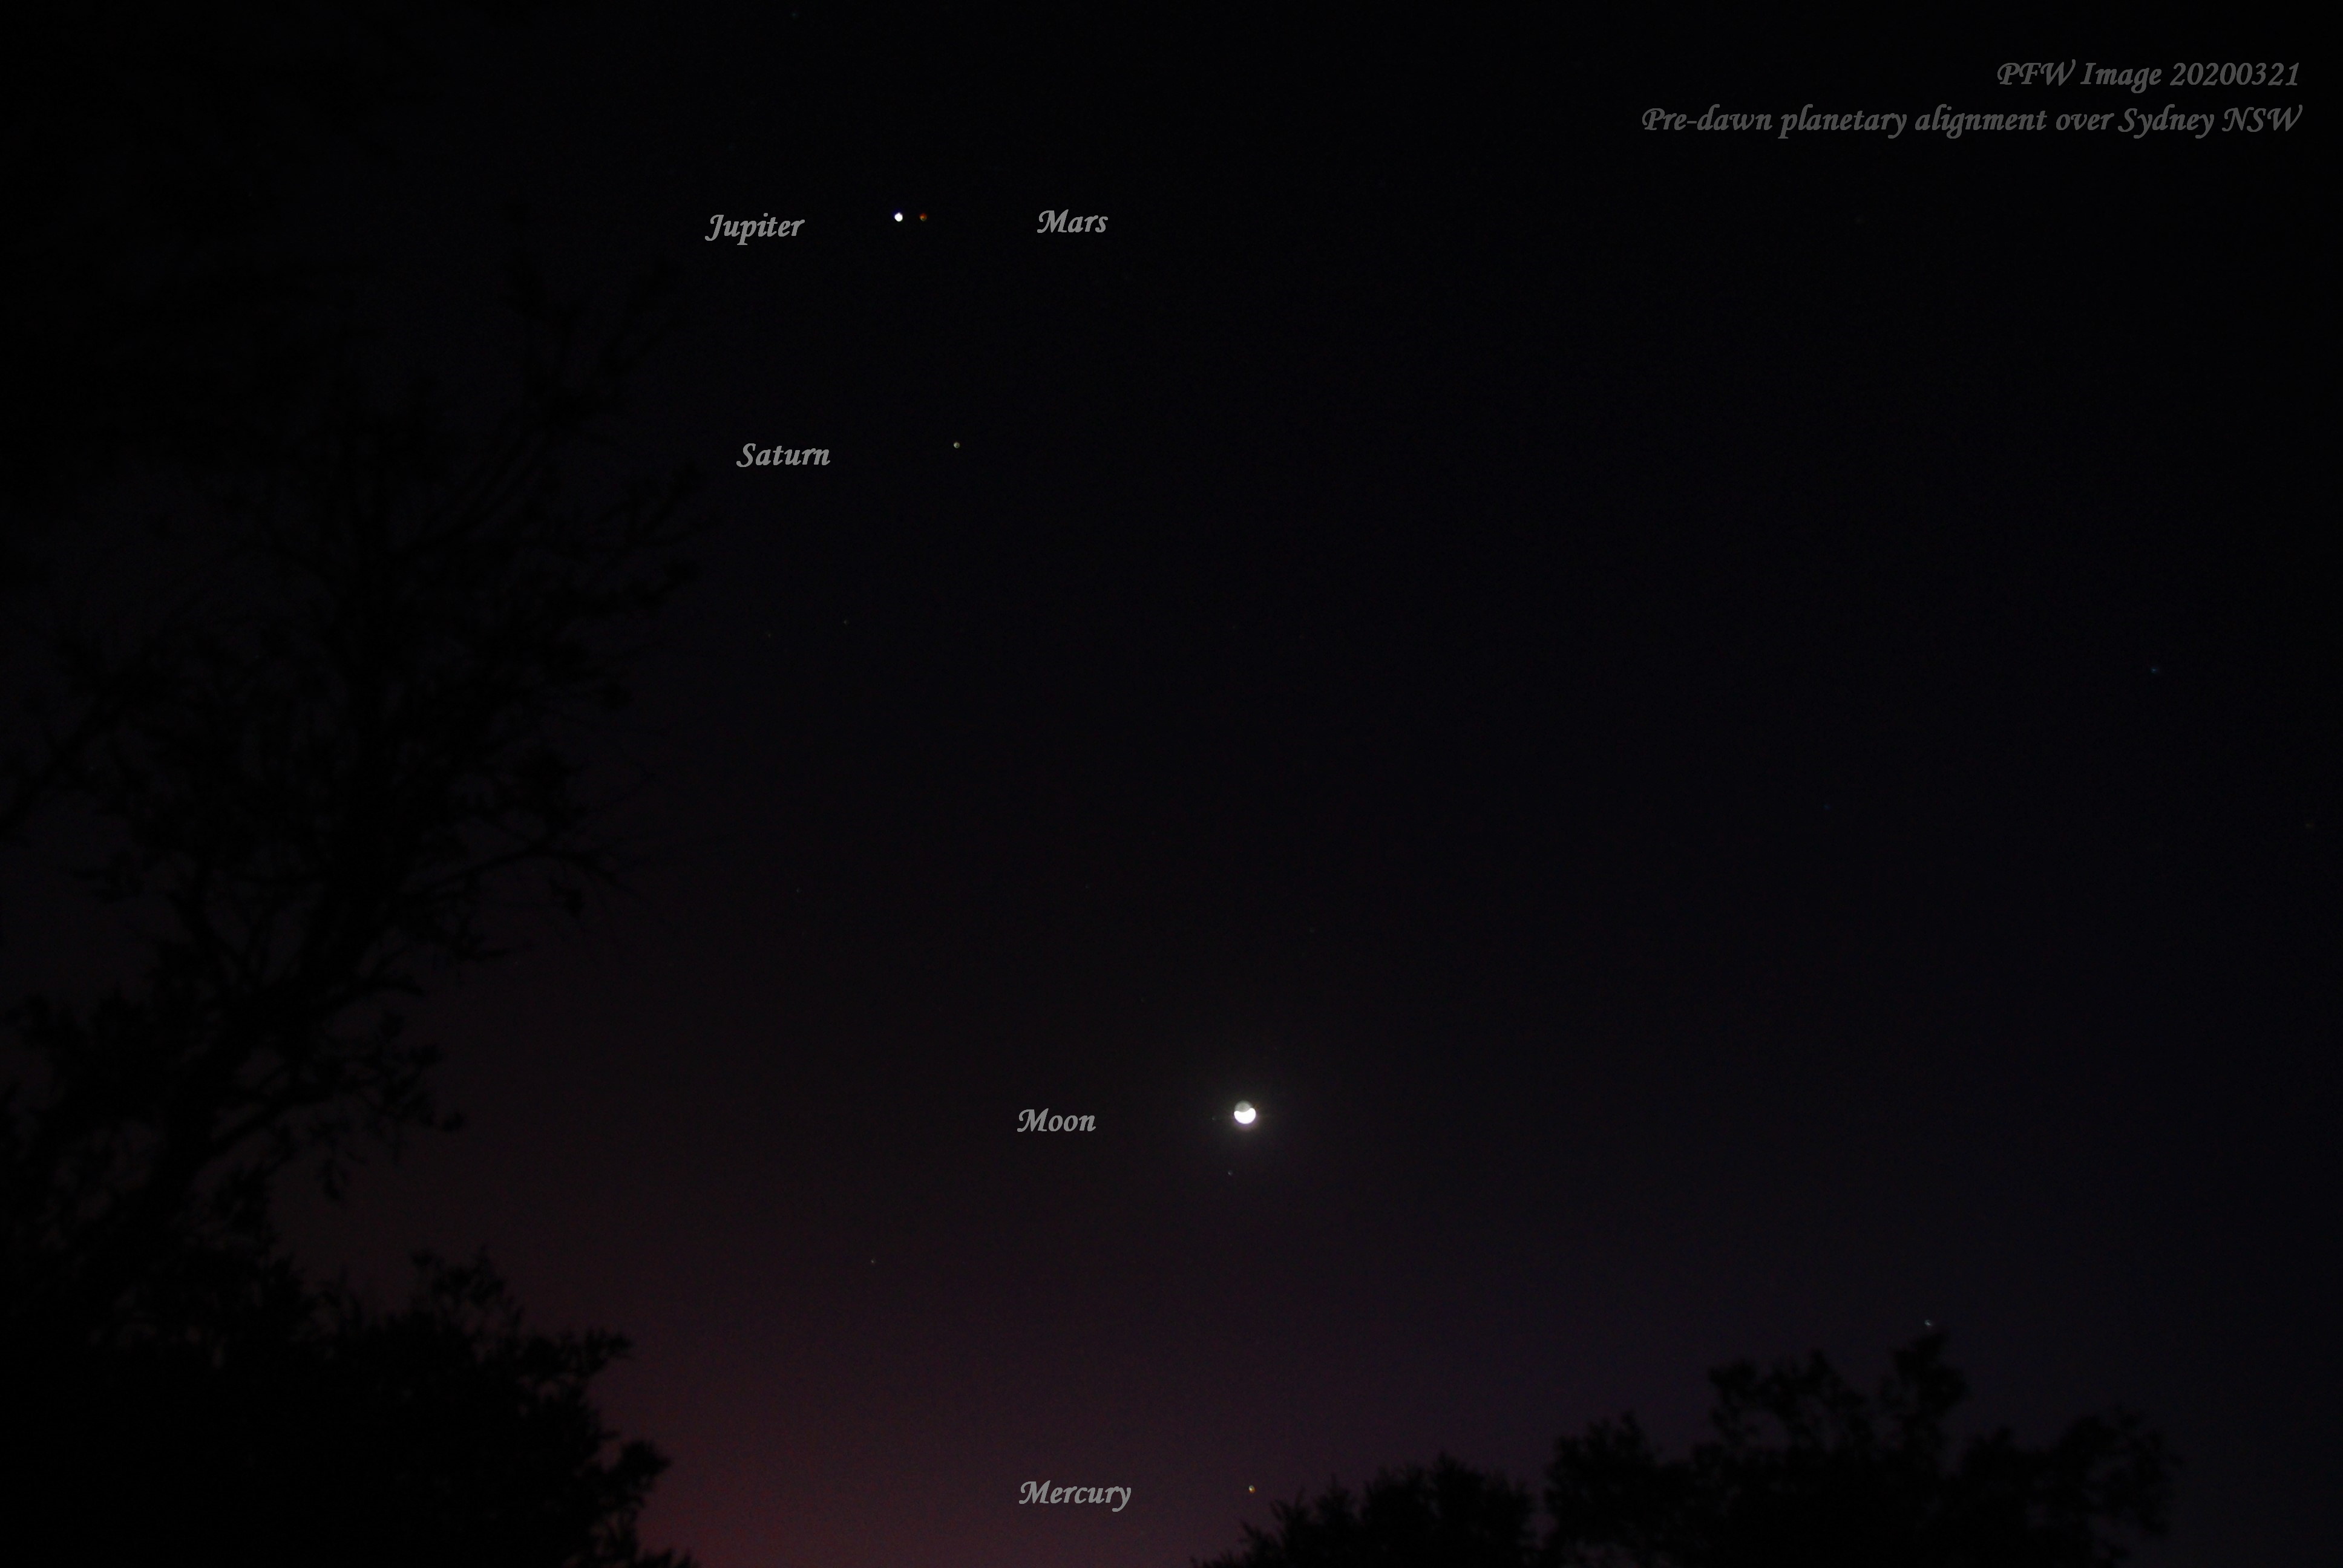 Jupiter, Mars, Saturn, Moon and Mercury